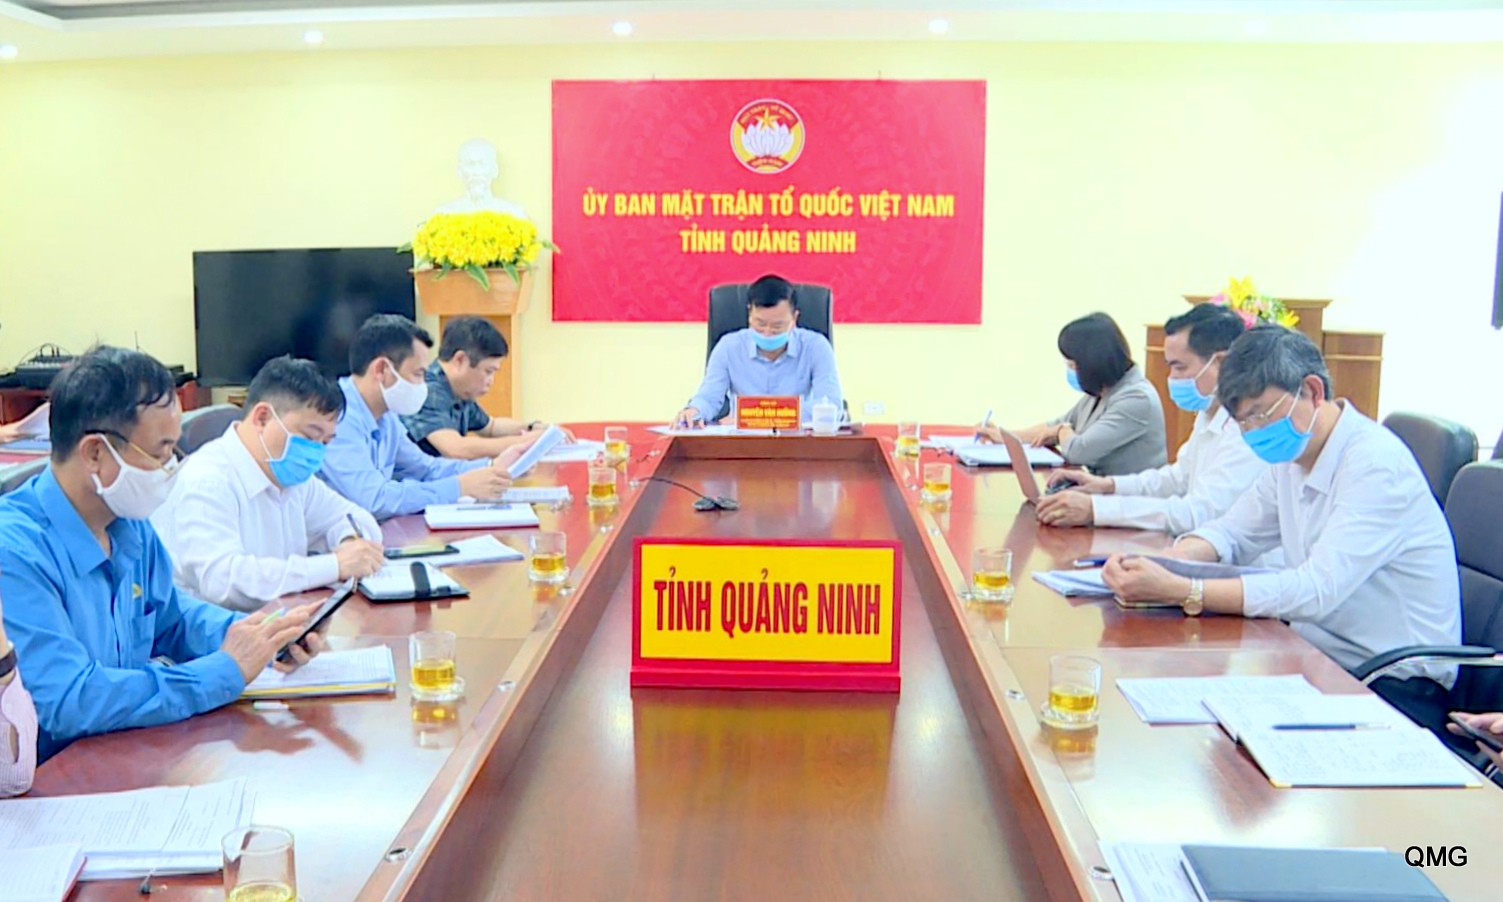 Điểm cầu Quảng Ninh tham dự hội nghị trực tuyến toàn quốc do Trung ương MTTQ tổ chức về hướng dẫn giám sát thực hiện Nghị quyết 42/NQ-CP của Chính phủ, ngày  27/4/2020. Ảnh: Tôn Vũ.